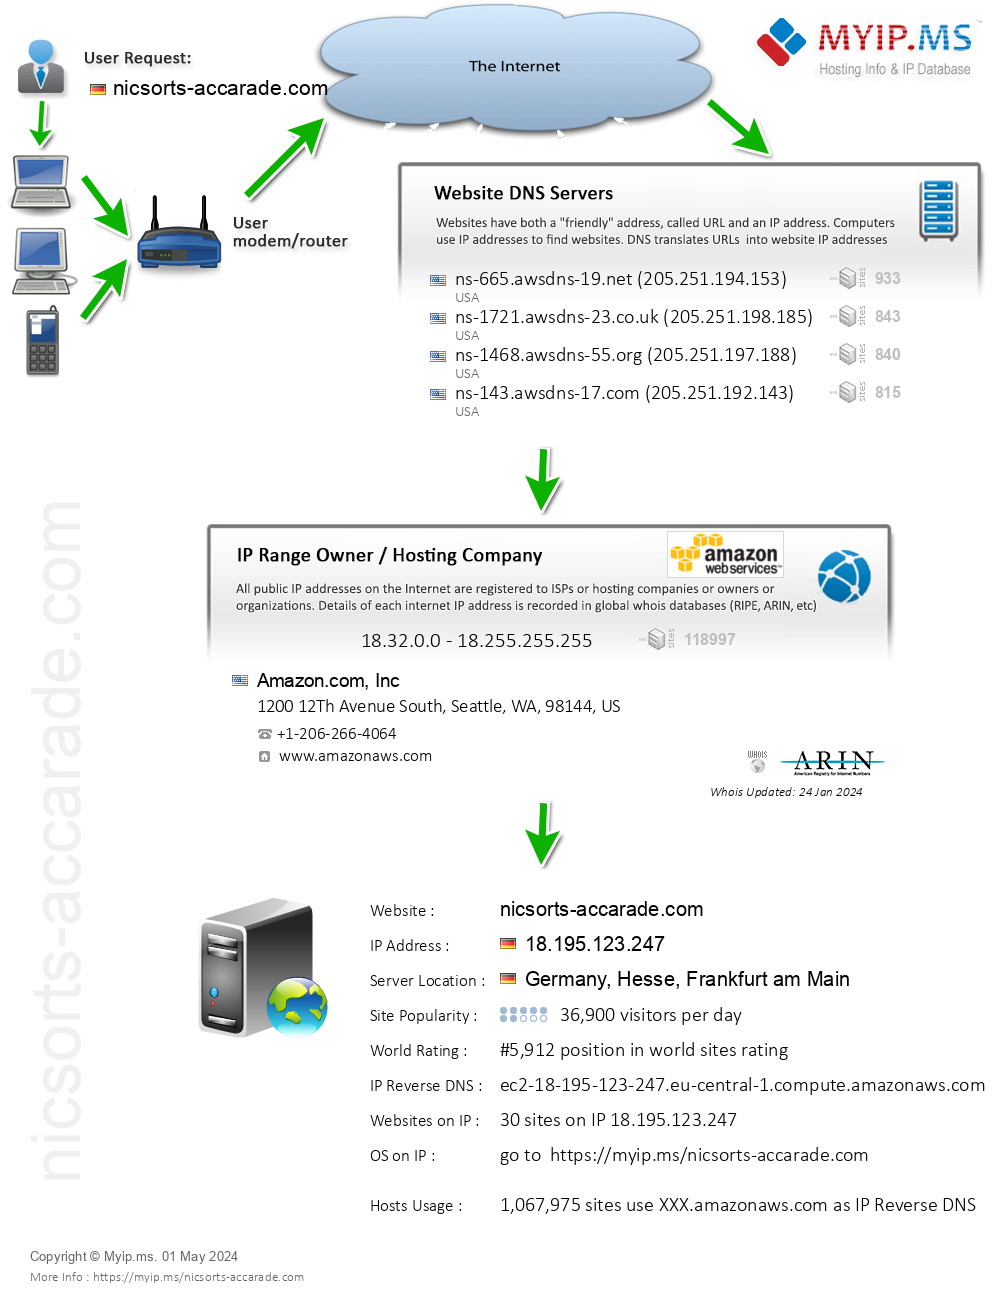 Nicsorts-accarade.com - Website Hosting Visual IP Diagram